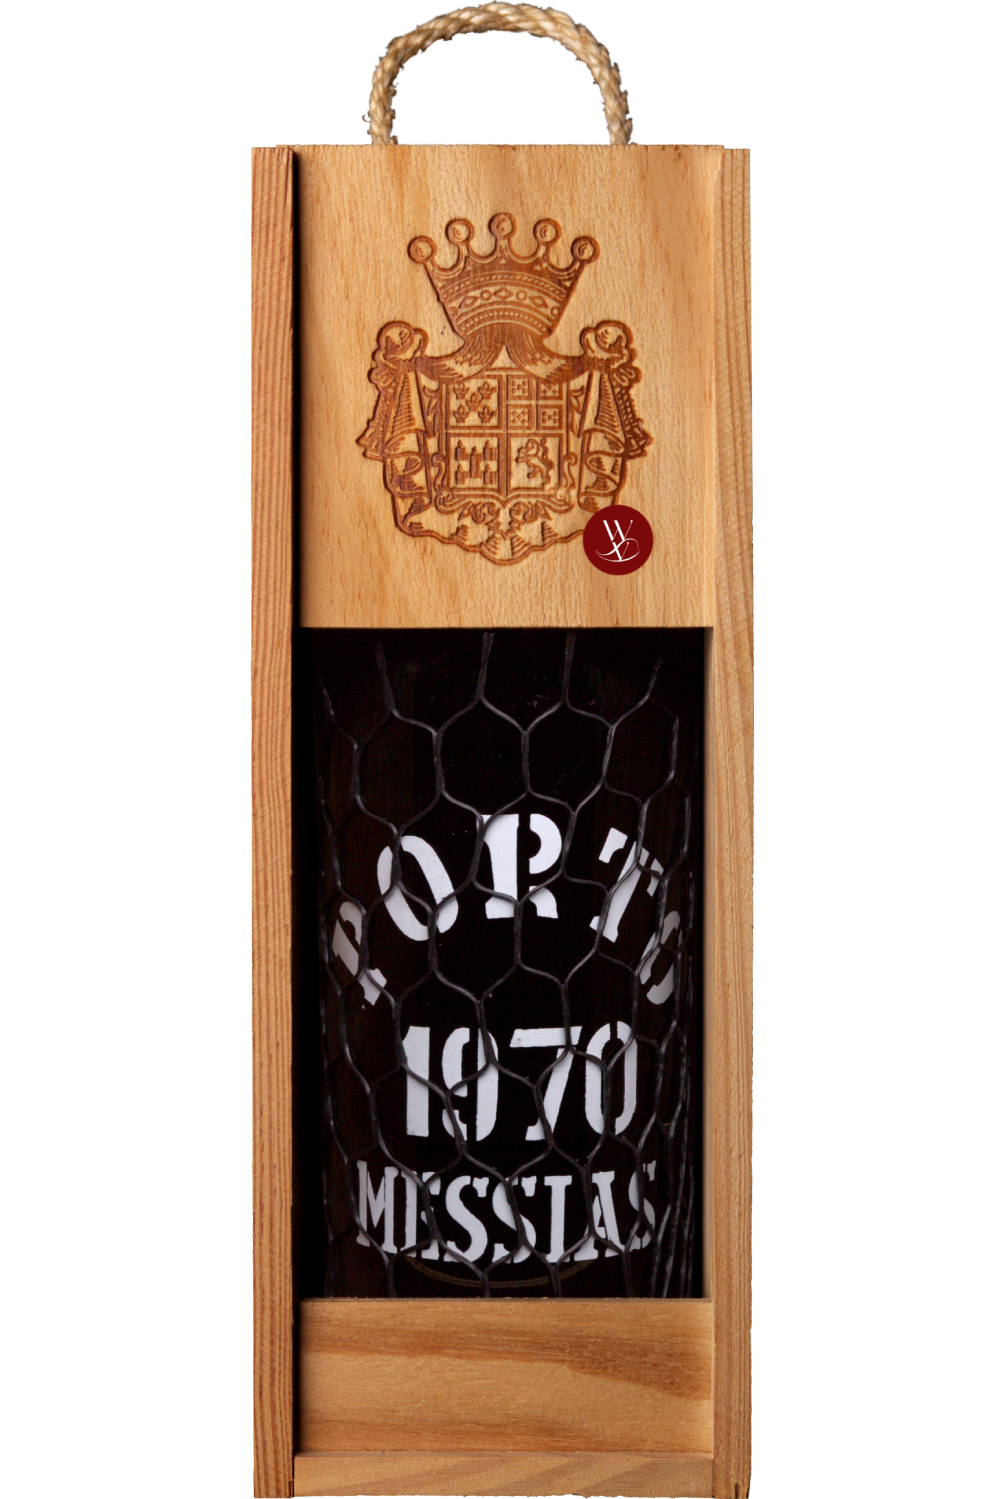 WineVins Porto Messias Colheita 1970